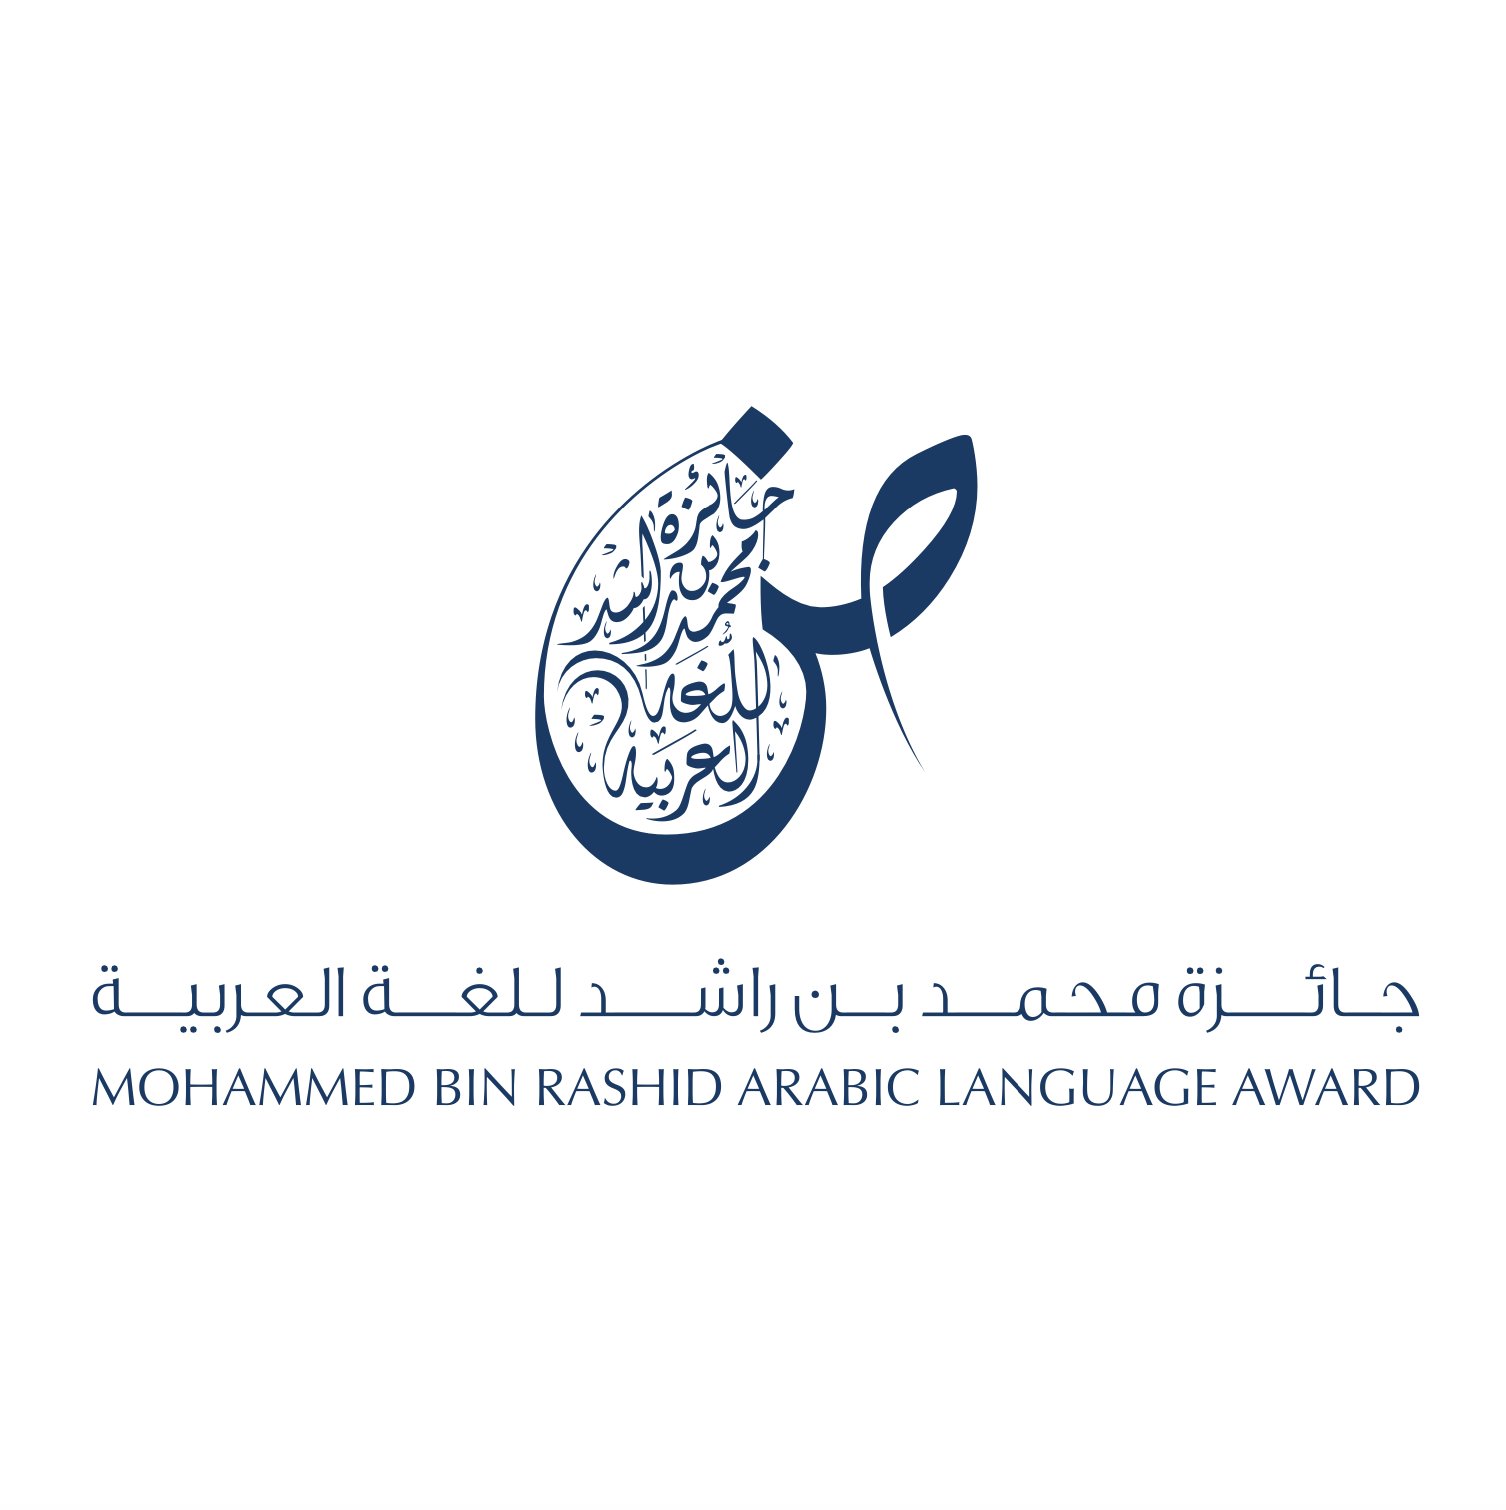 جائزة محمد بن راشد للغة العربية تخصص أكثر من 2.8 ملايين درهم جوائز للدورة السابعة